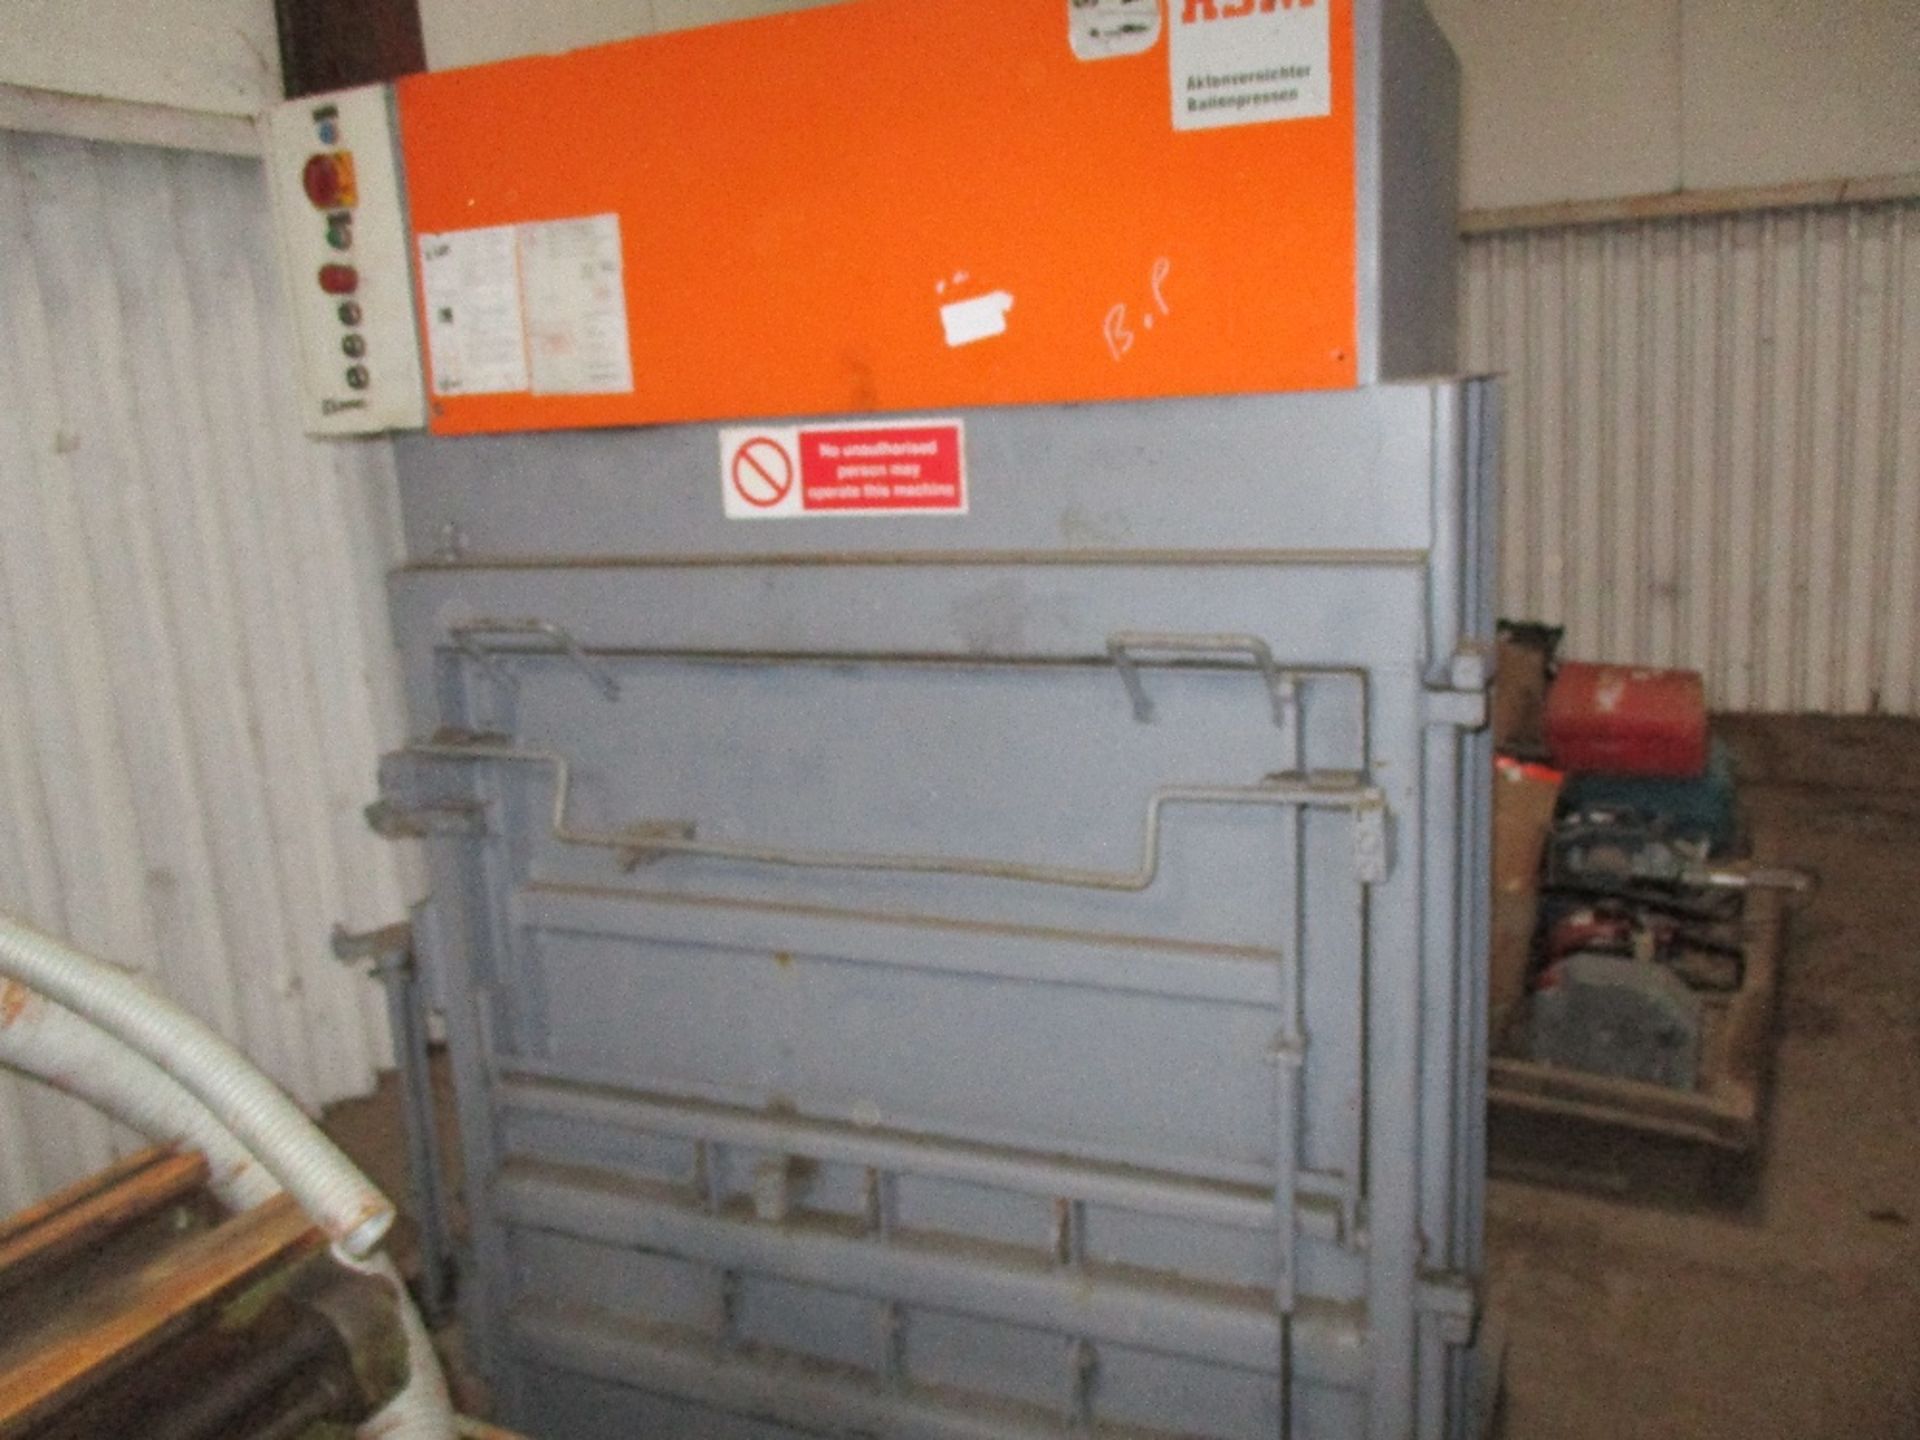 HSM 155.1VL waste compactor - Image 6 of 13